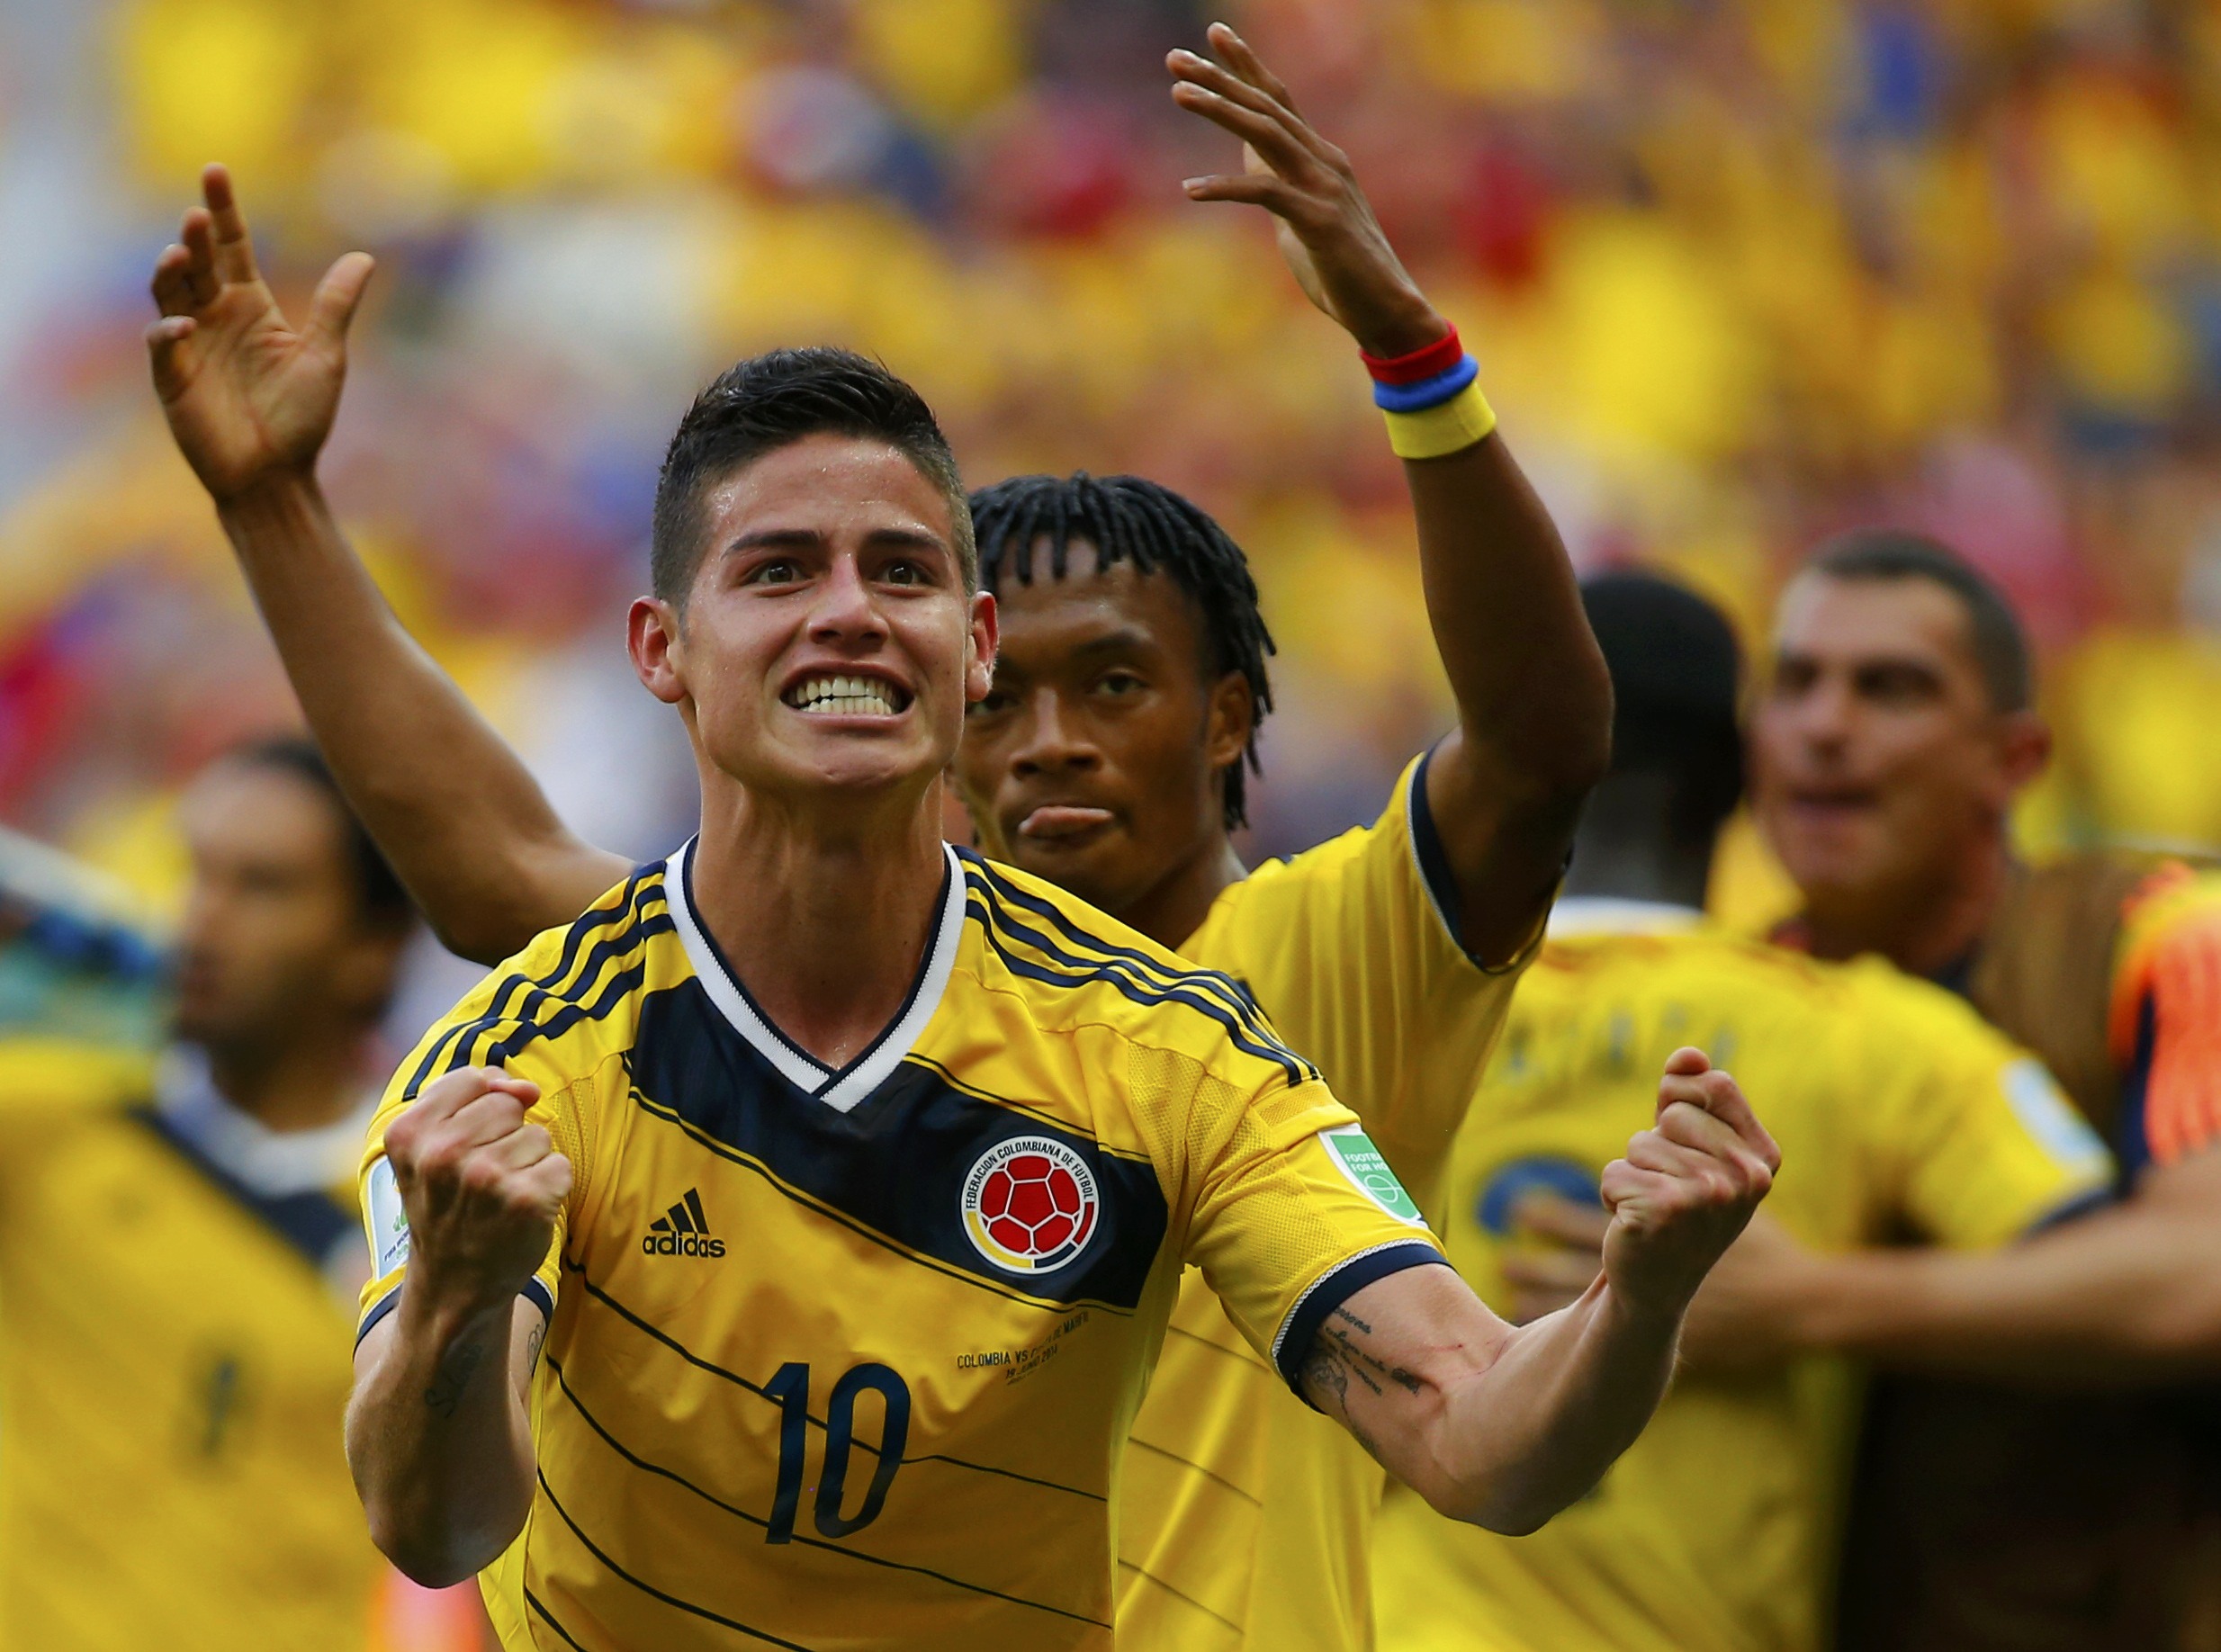 Así reseñó la prensa colombiana el triunfo de su selección #MundialBrasil2014 (Fotos)